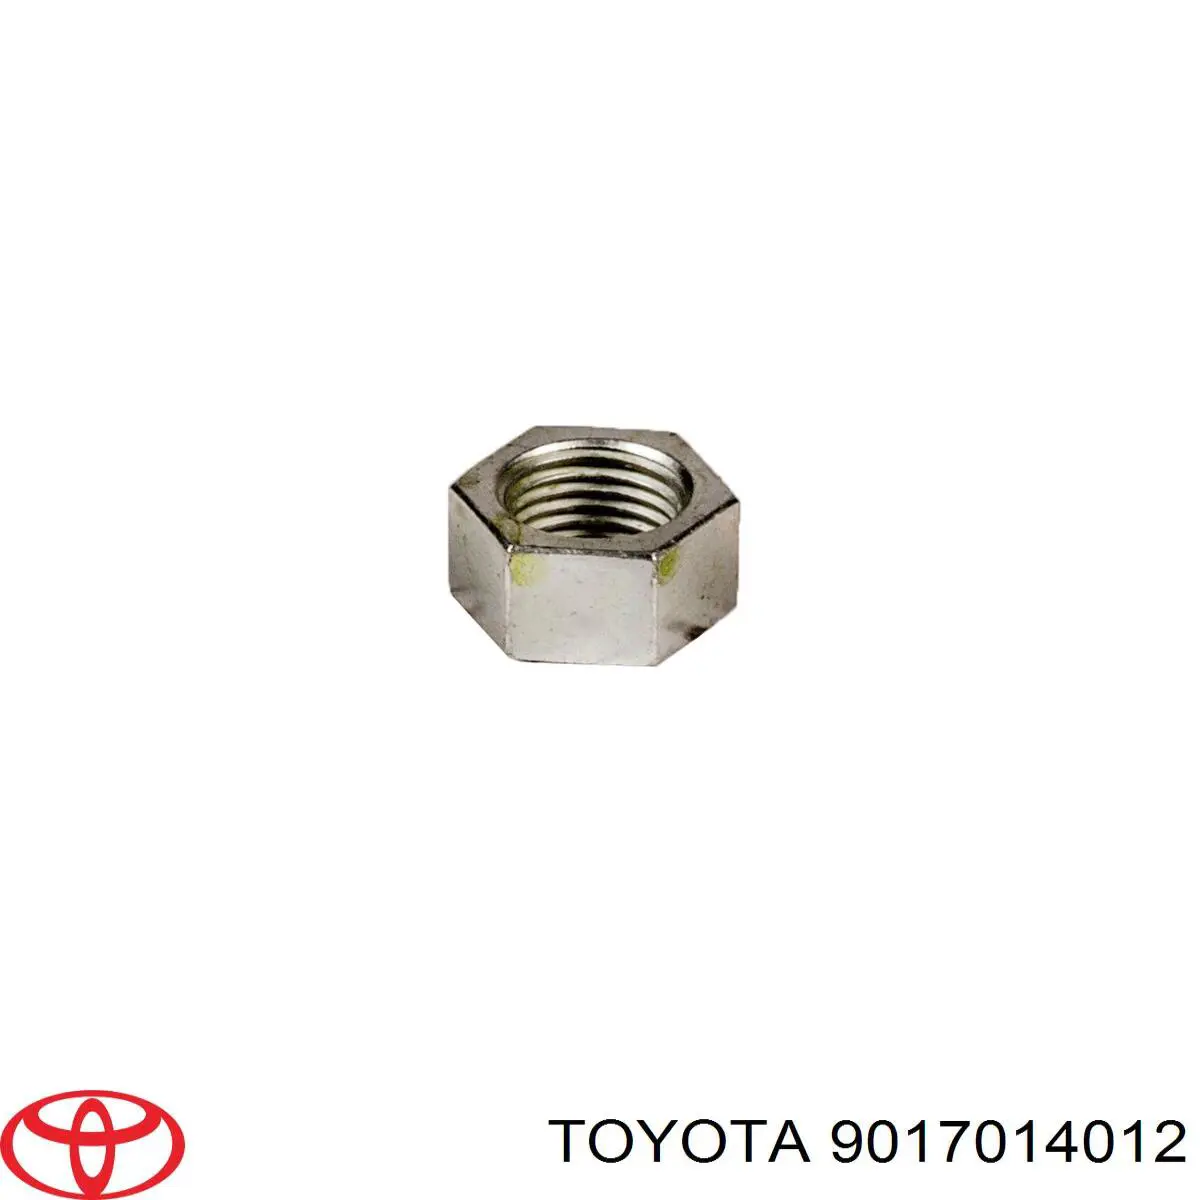 Porca excêntrica do braço oscilante inferior traseiro (de inclinação) para Toyota Yaris 